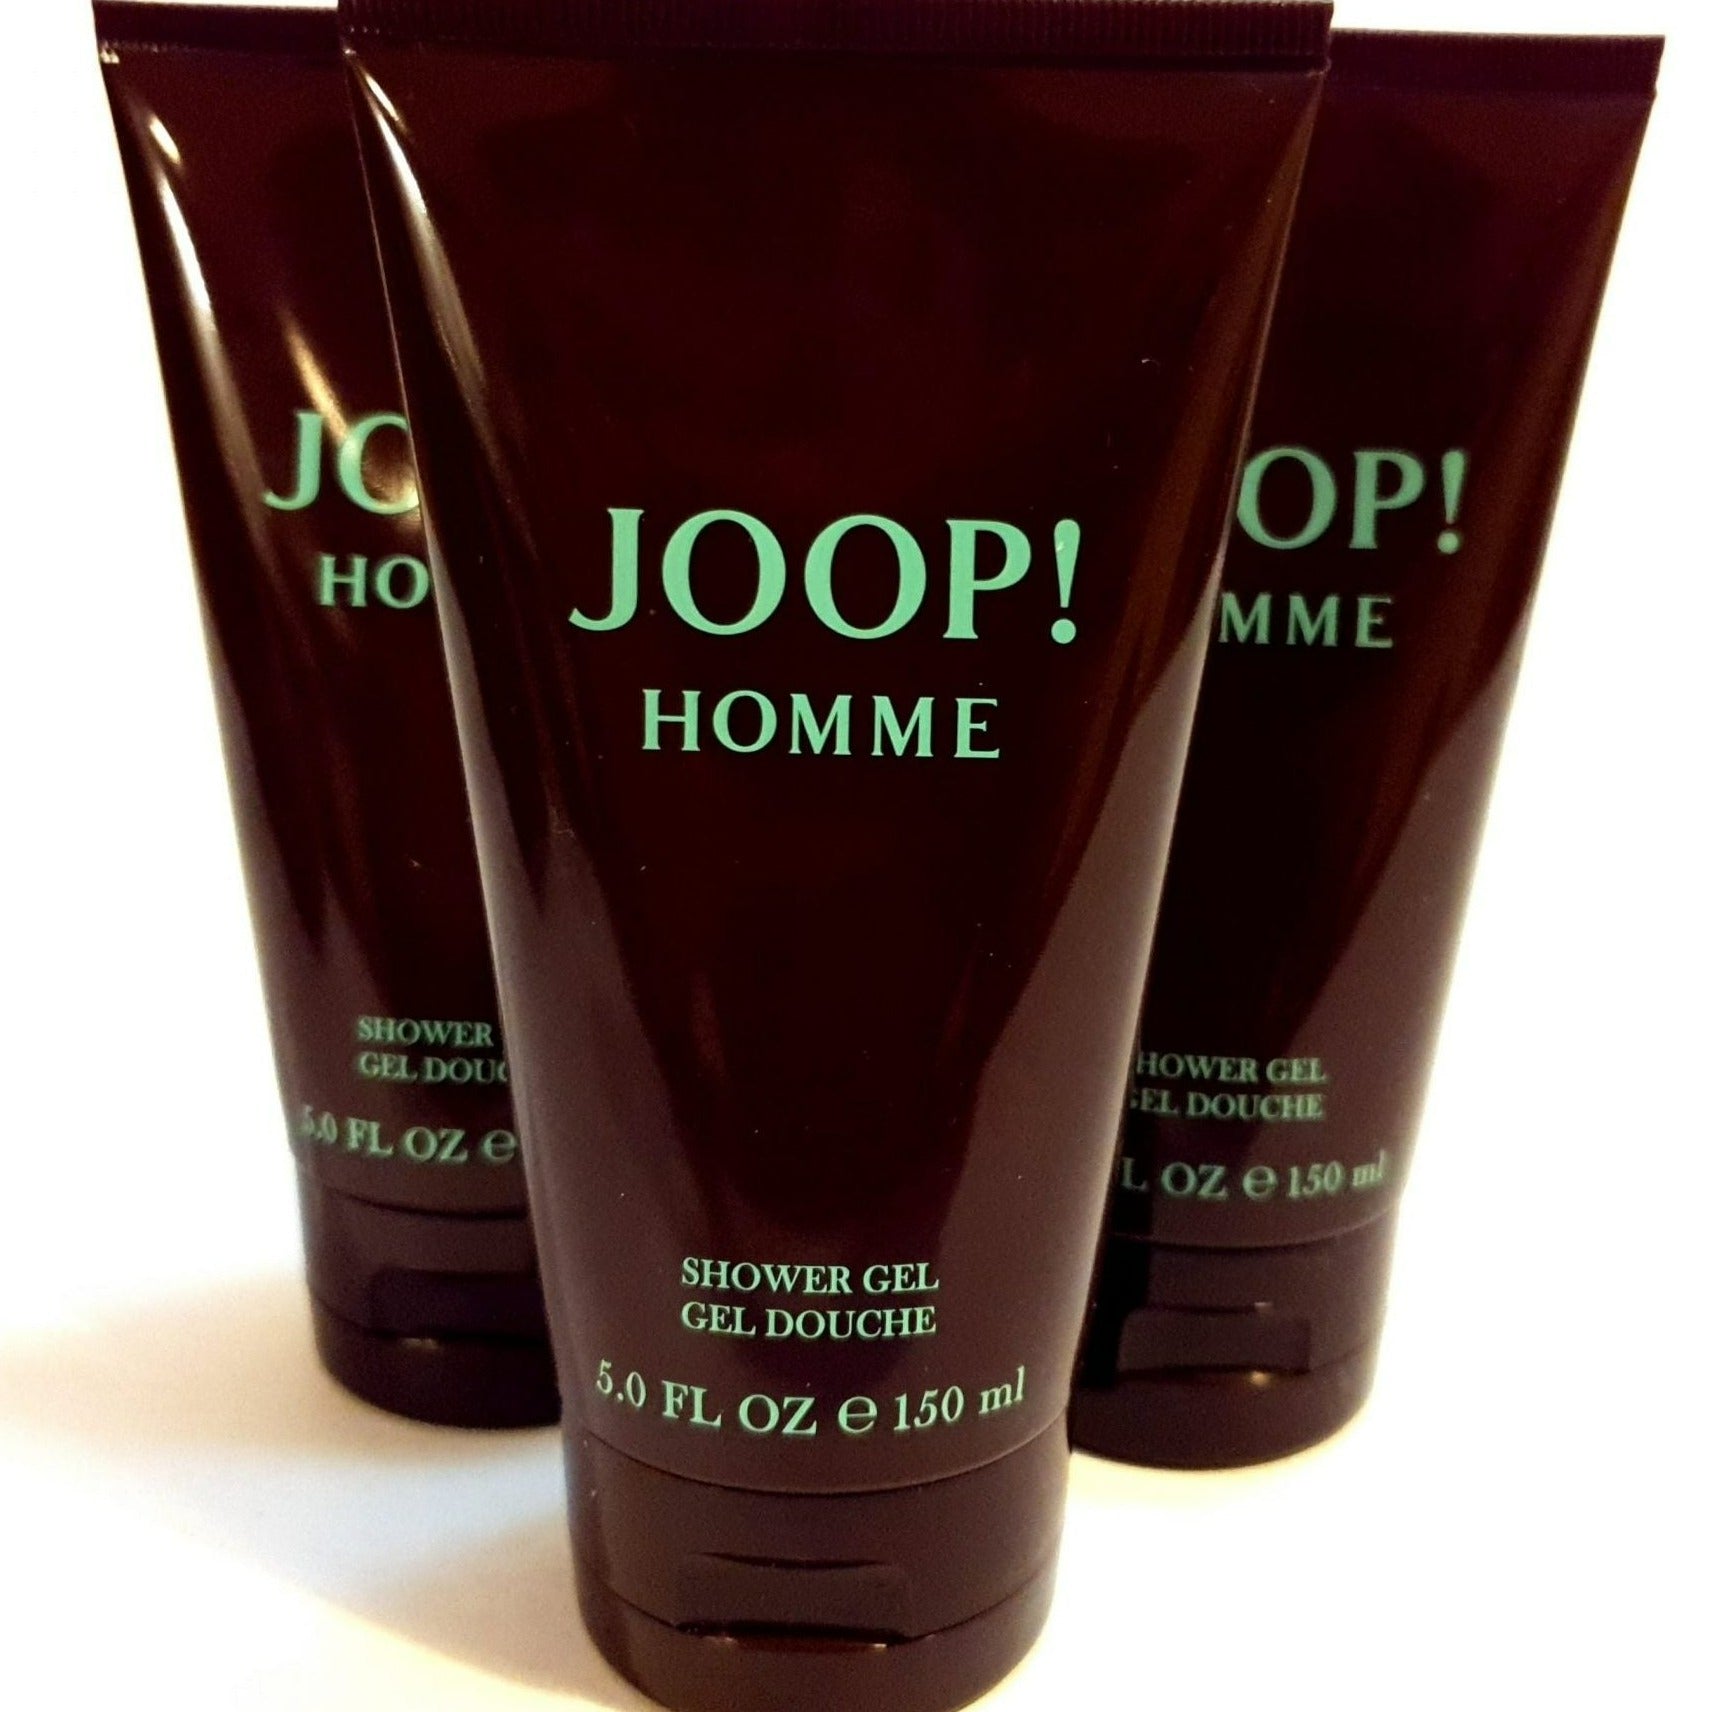 Joop! Homme Shower Gel | My Perfume Shop Australia